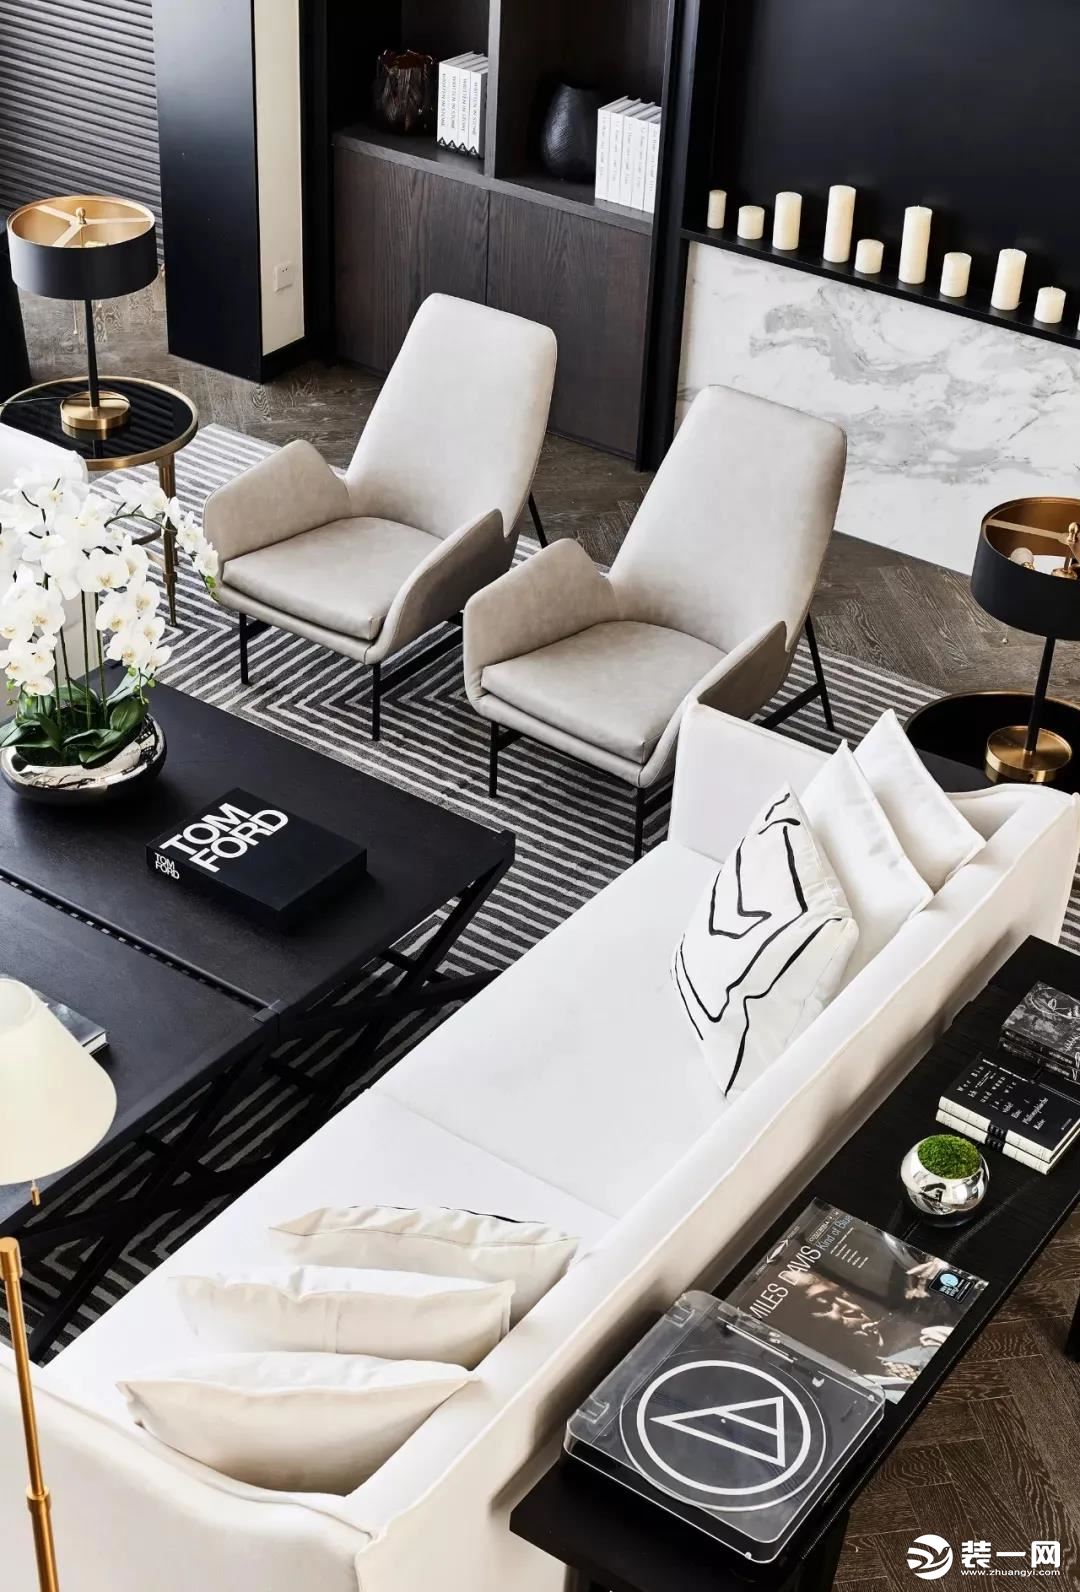 宽大的米白色布艺沙发，地面上还有黑白条纹的地毯，黑白配的空间，布置出舒适优雅的华丽气质